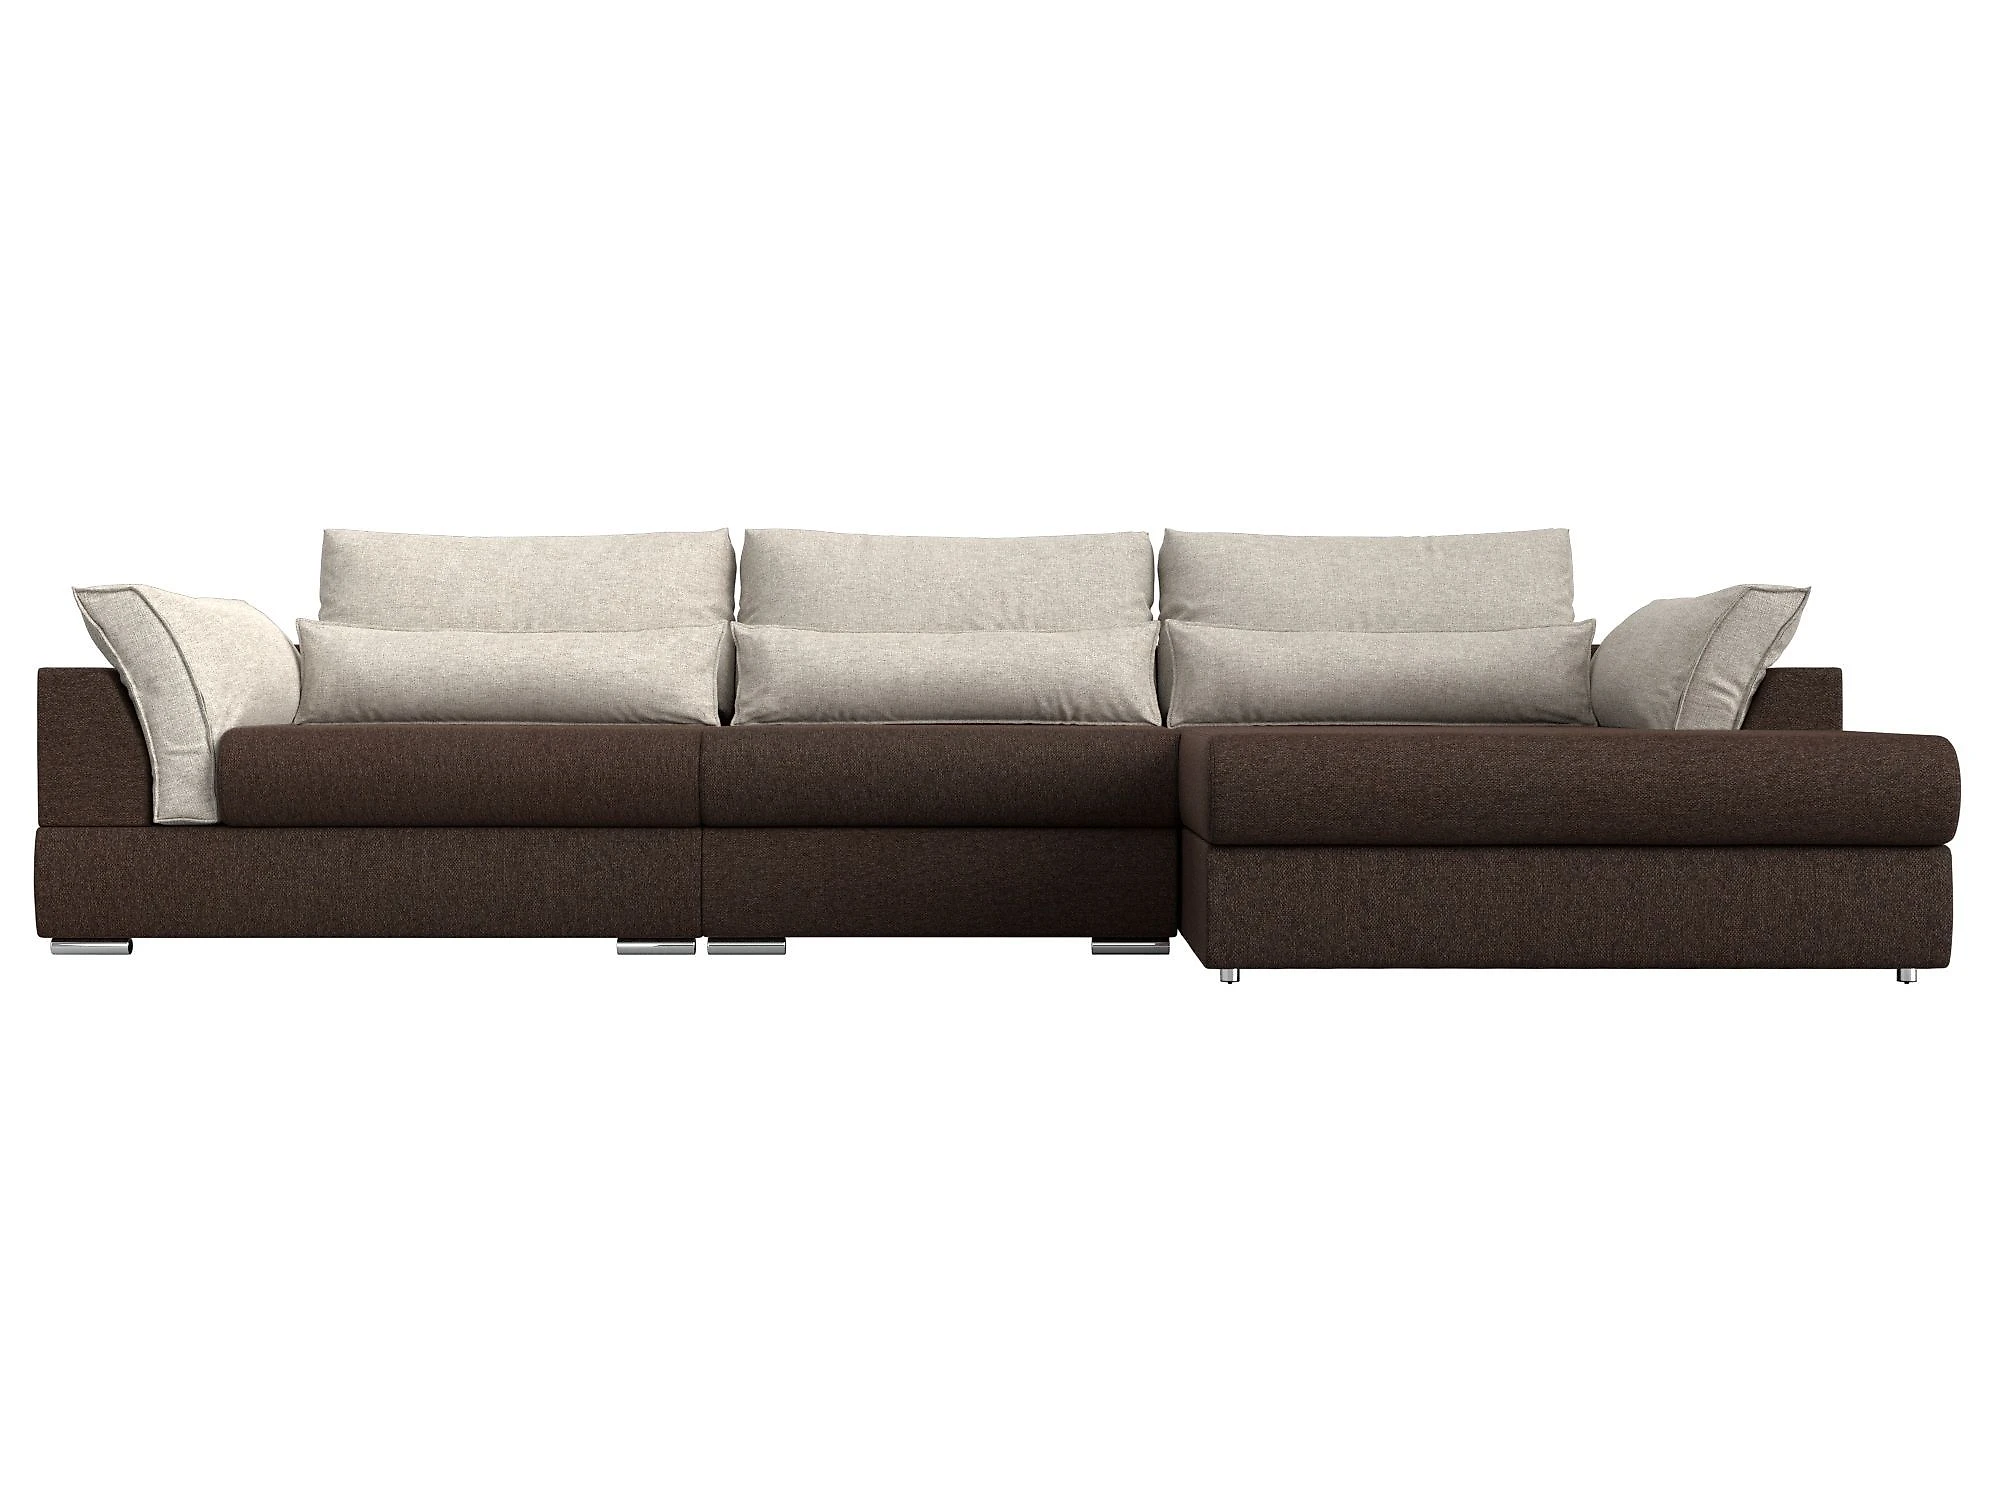  угловой диван из рогожки Пекин Лонг Кантри Дизайн 5